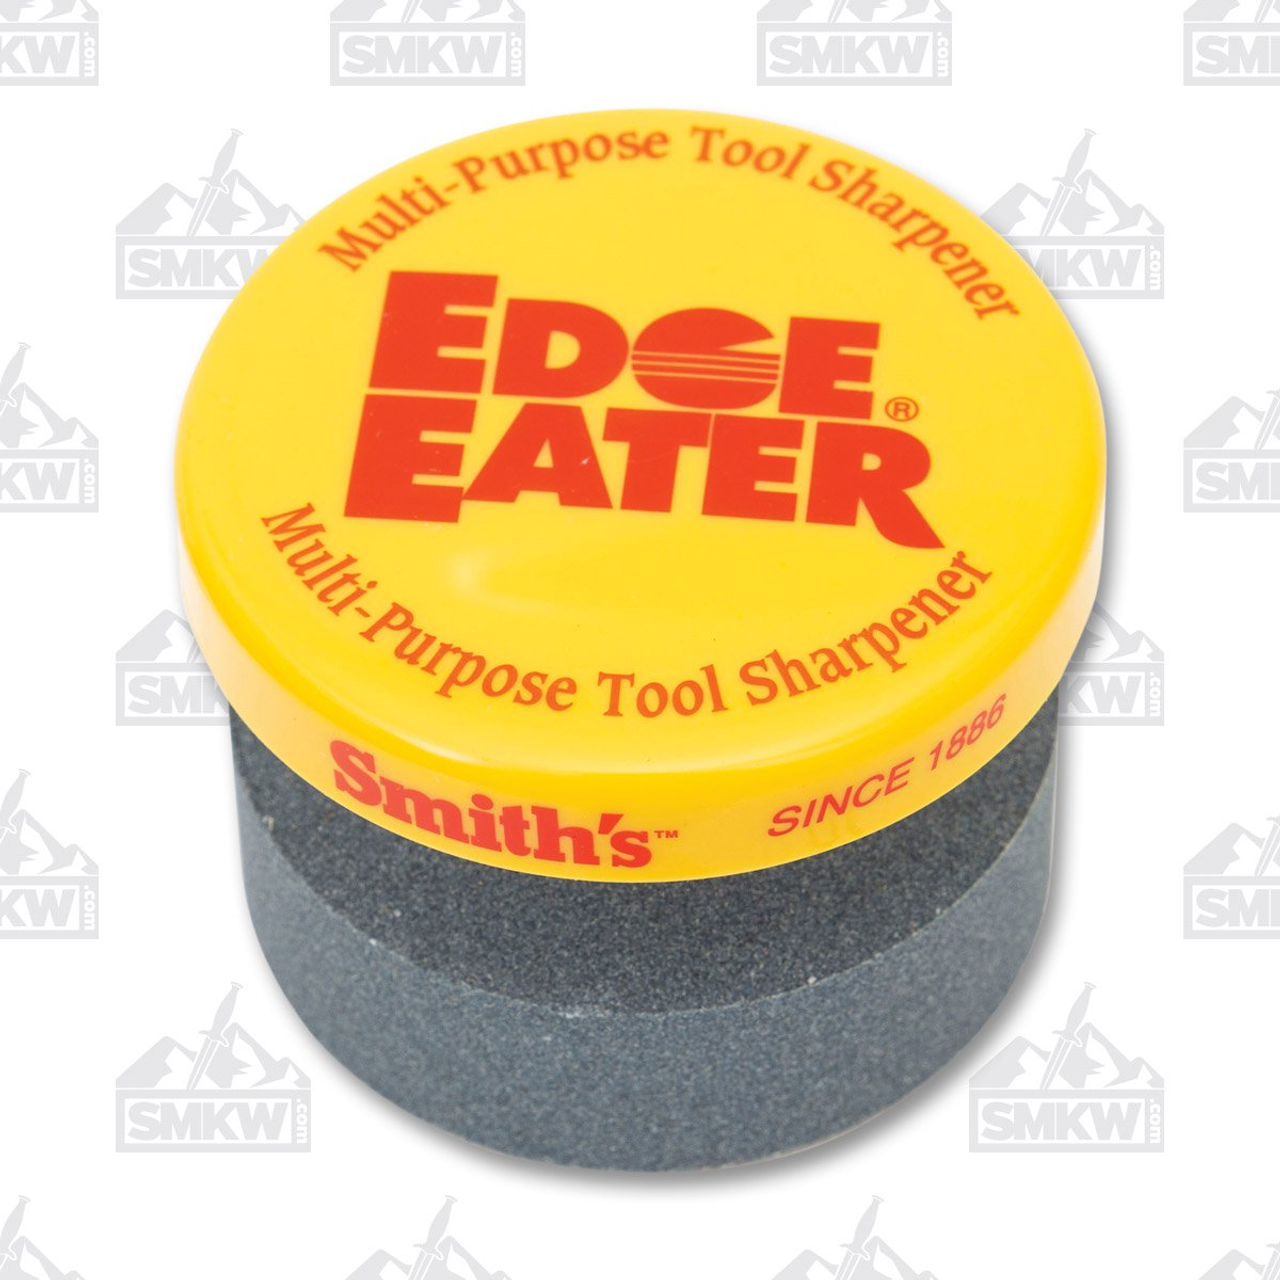 Smith's 50910 Edge Eater Stone